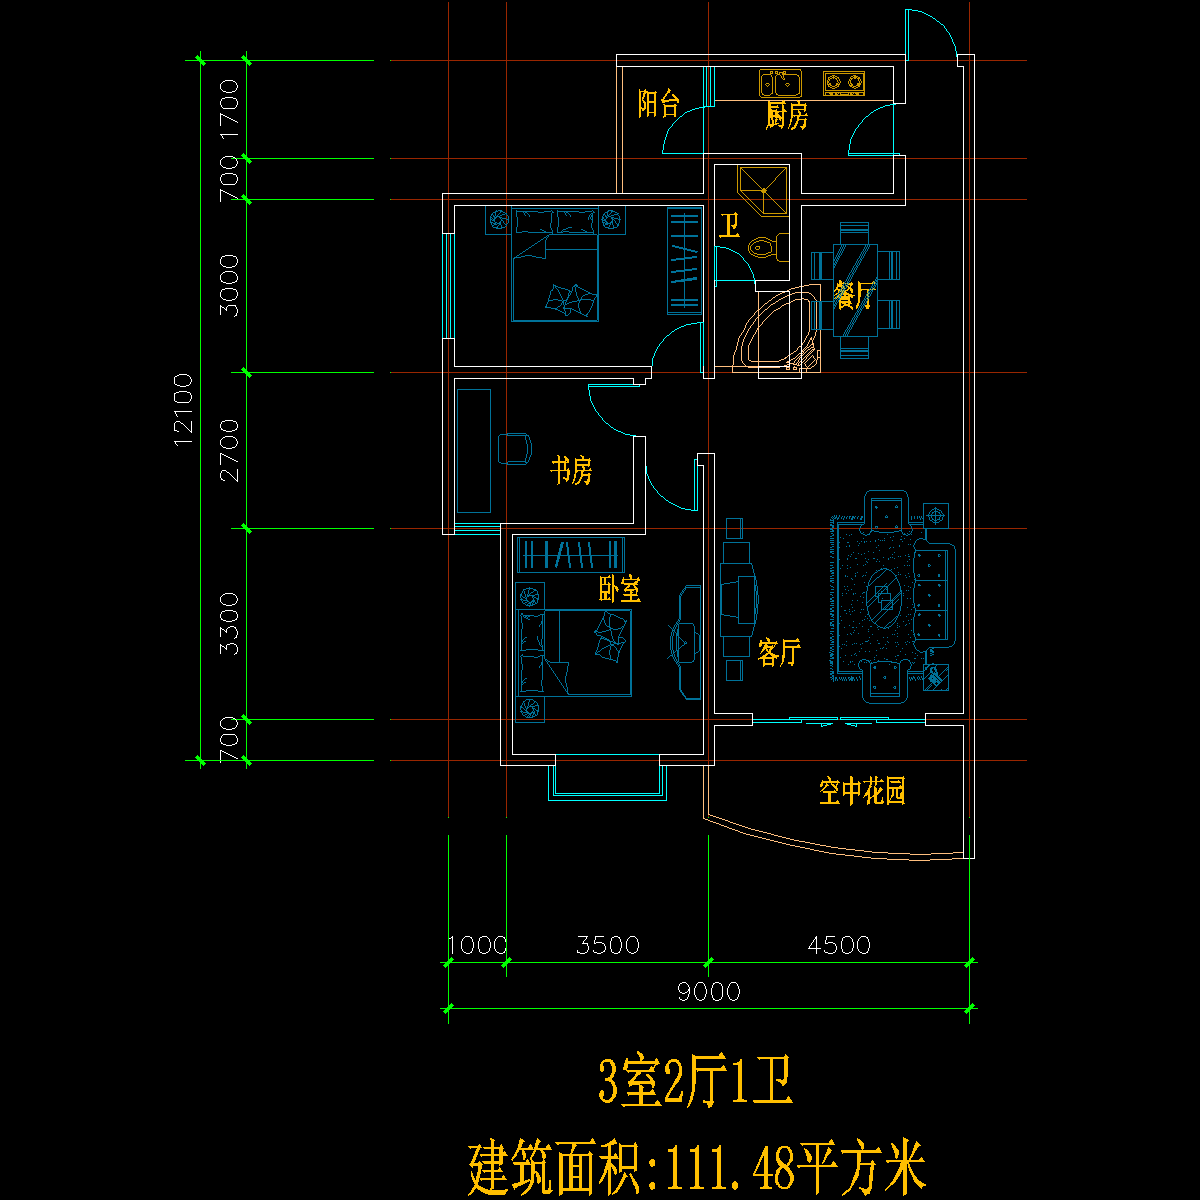 板式多层单户三室二厅一卫户型CAD图纸(111)